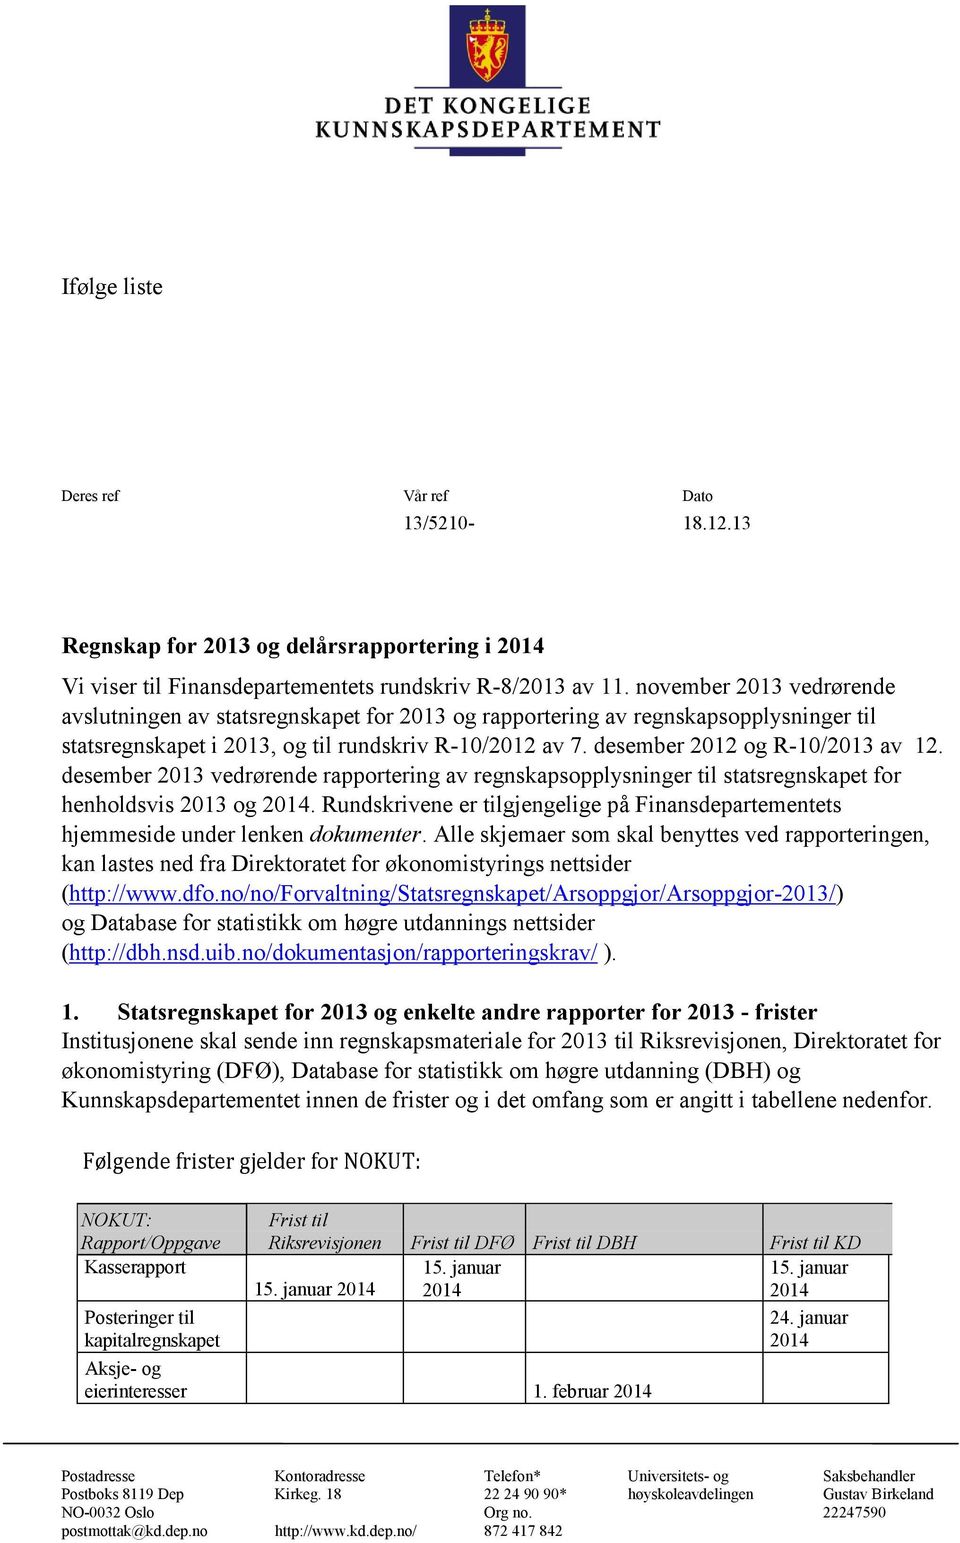 desember 2012 og R-10/2013 av 12. desember 2013 vedrørende rapportering av regnskapsopplysninger til statsregnskapet for henholdsvis 2013 og.